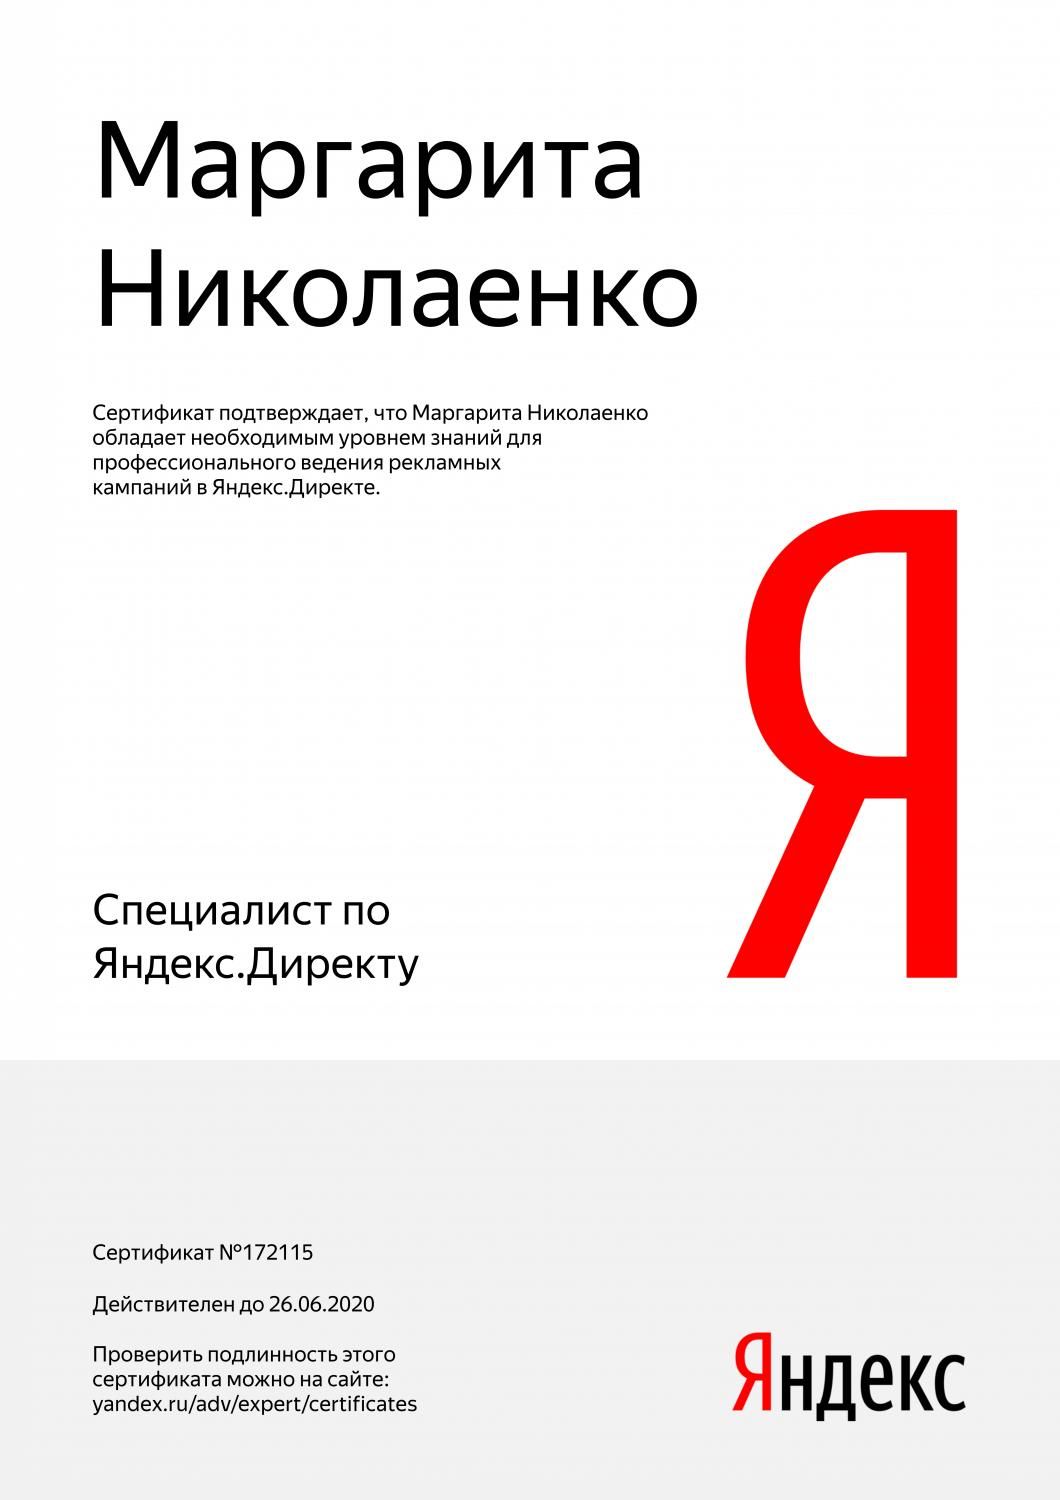 Сертификат специалиста Яндекс. Директ - Николаенко М. в Владикавказа